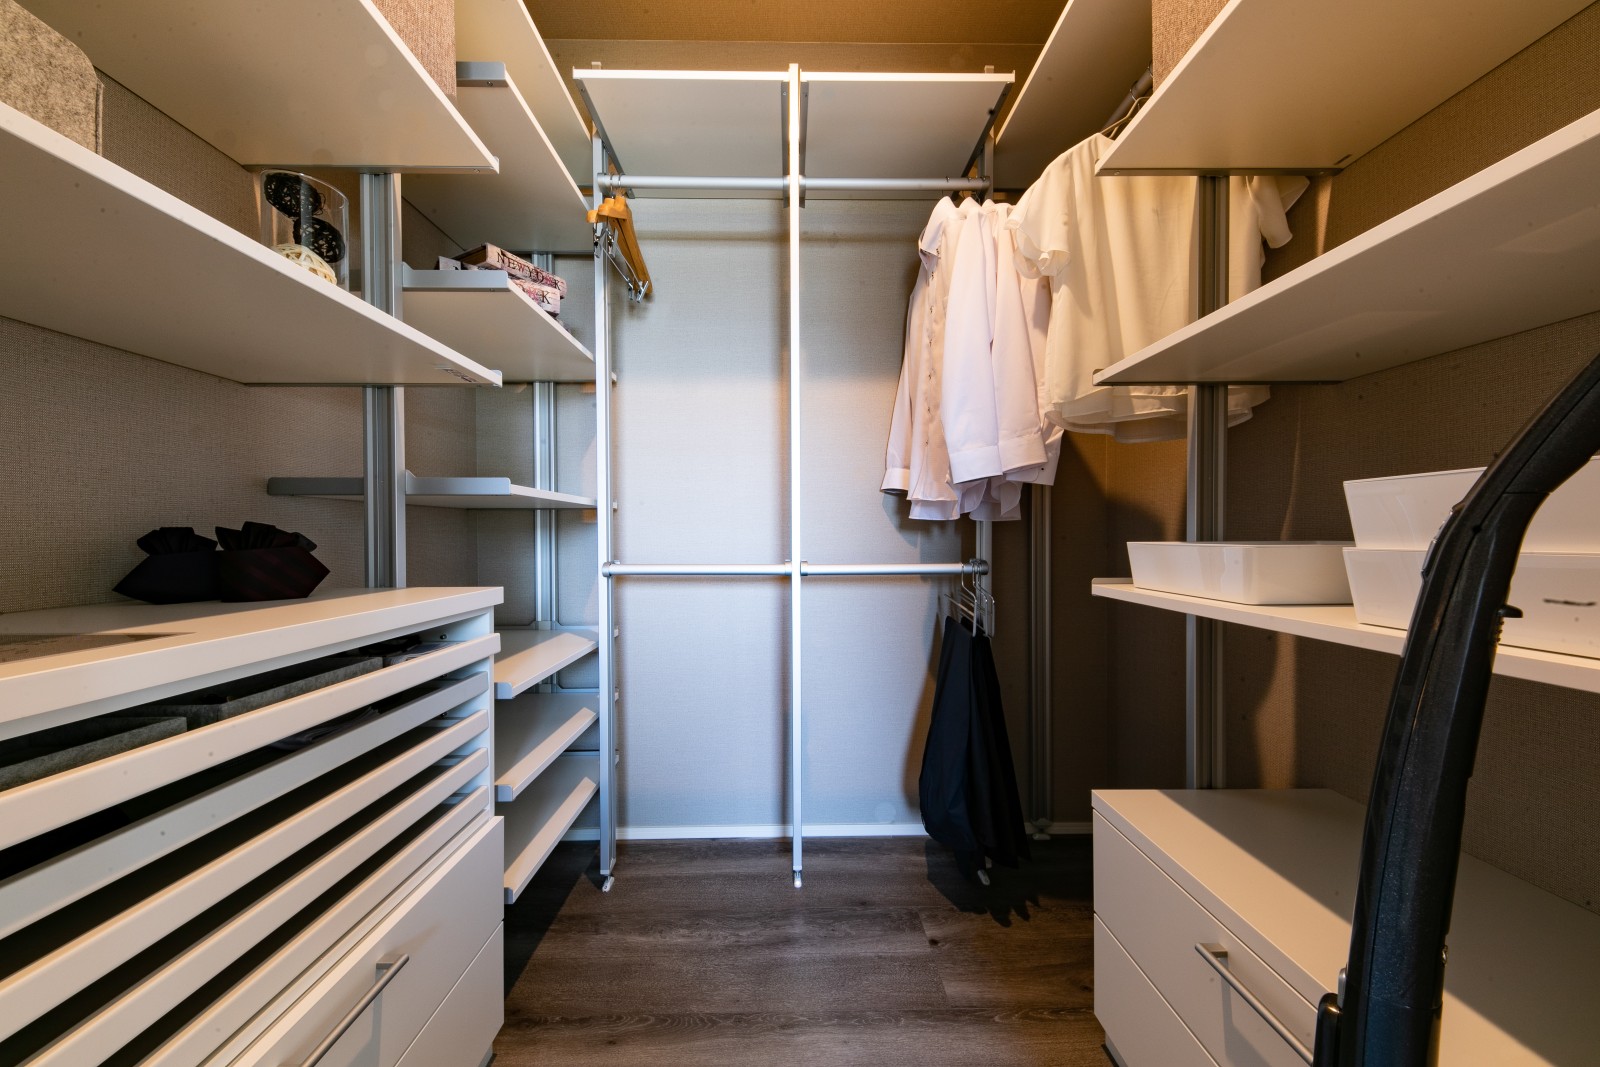 【プラン例】ウォークインクローゼット 広々とした収納スペースには衣類だけではなく、家電なども収納可能です。